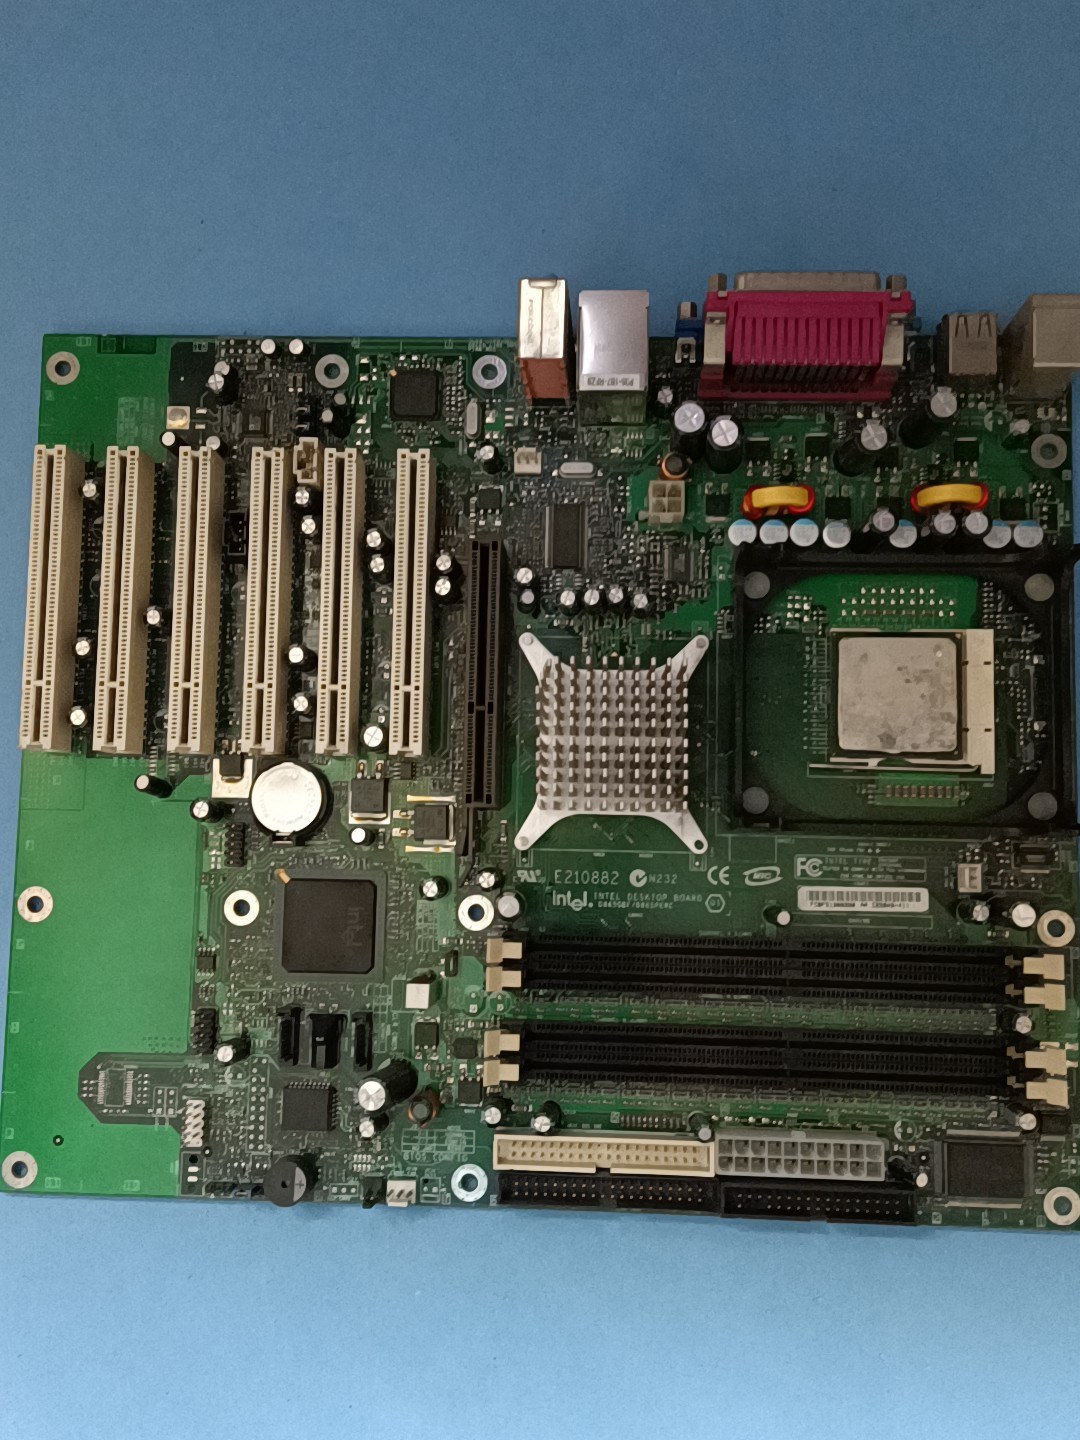 Intel DESKTOP BOARD D865GBF/D8